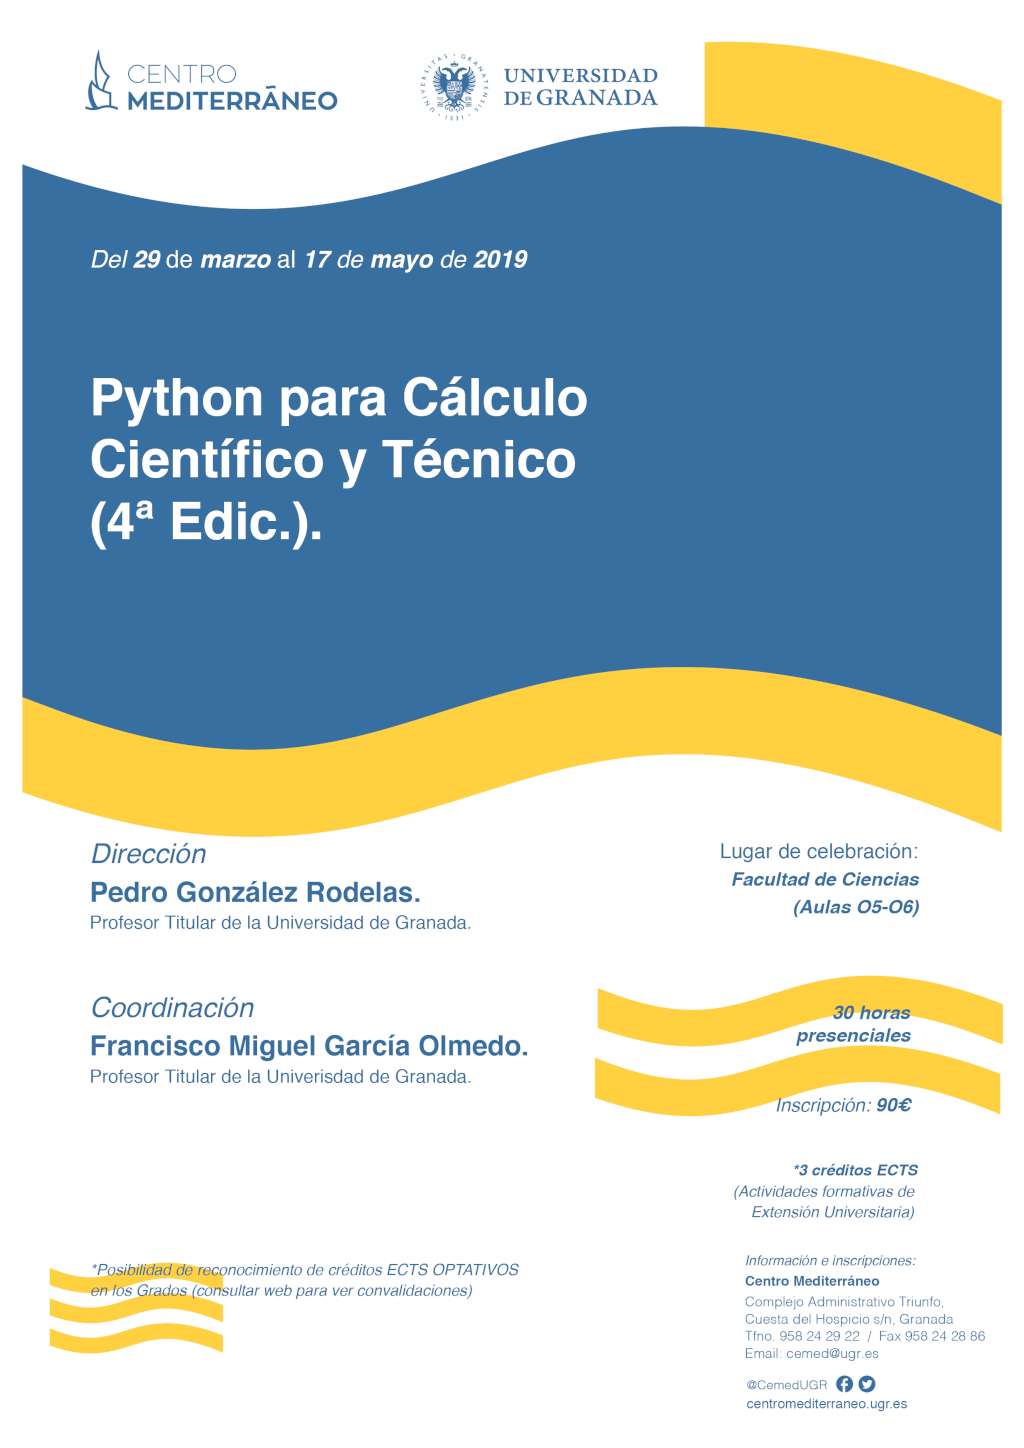 Python para Cálculo Científico y Técnico (4ª Edic.)